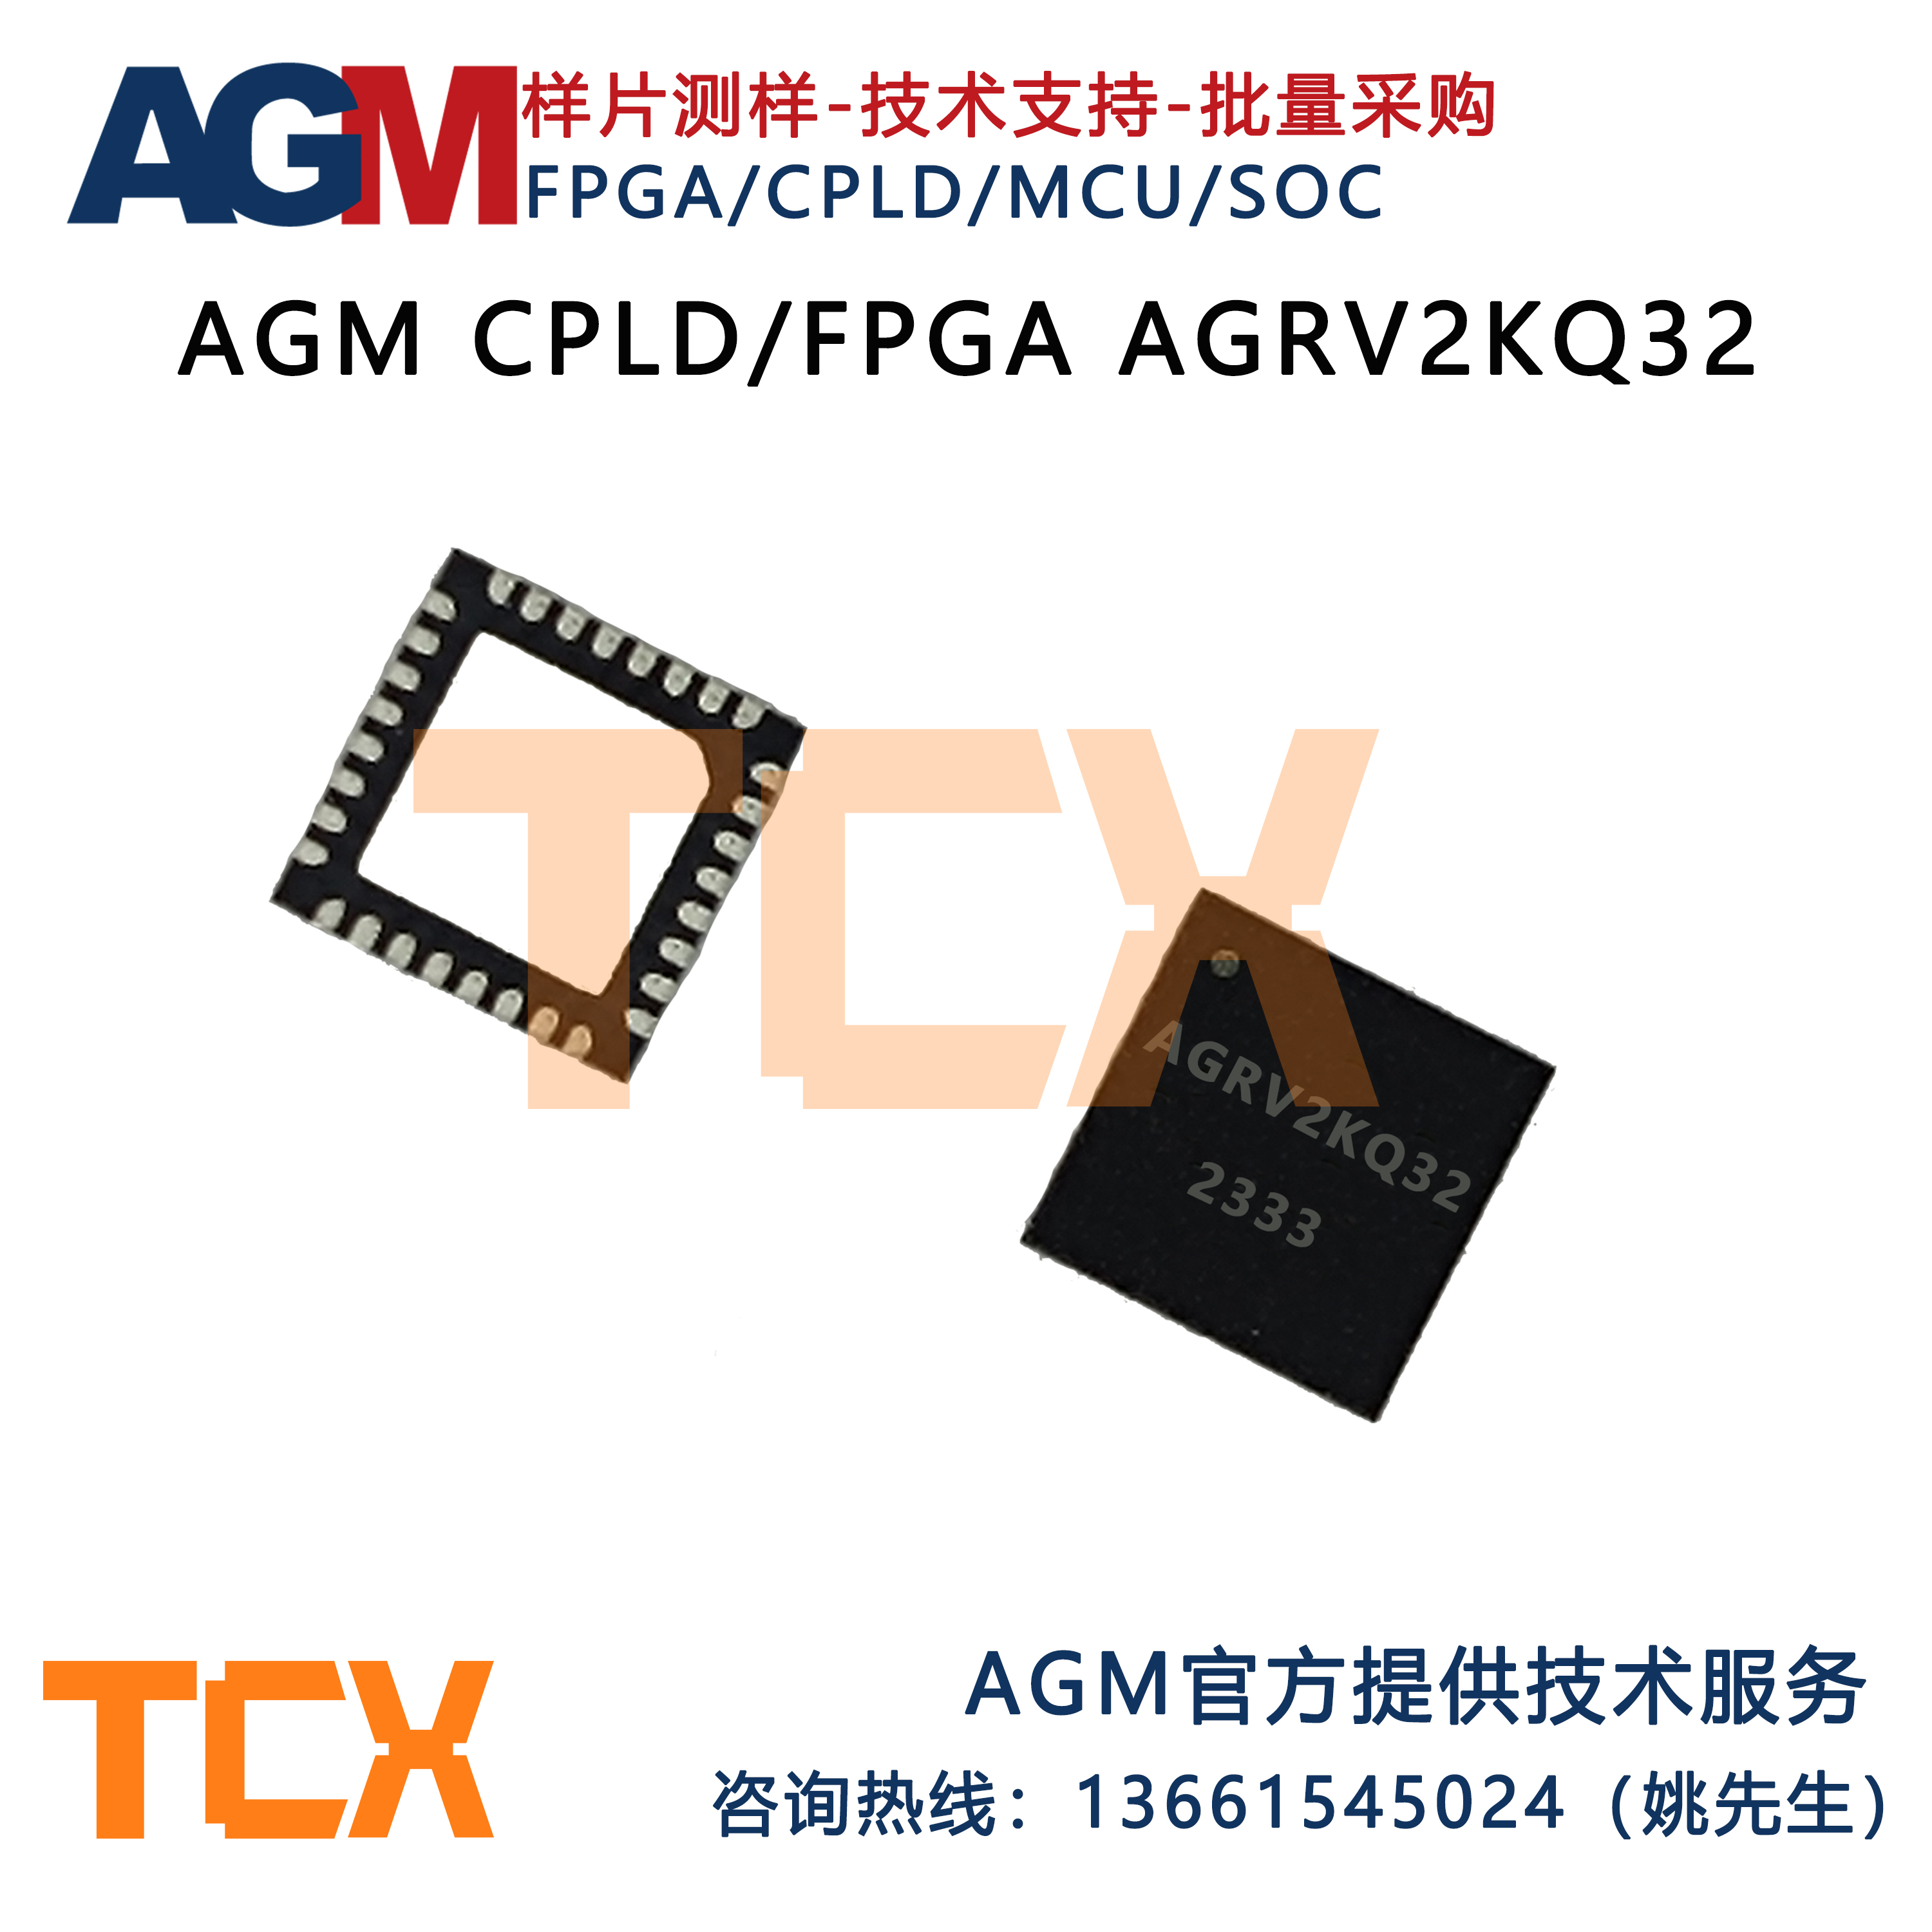 国产AGMFPGA芯片CPLD芯片AG1280